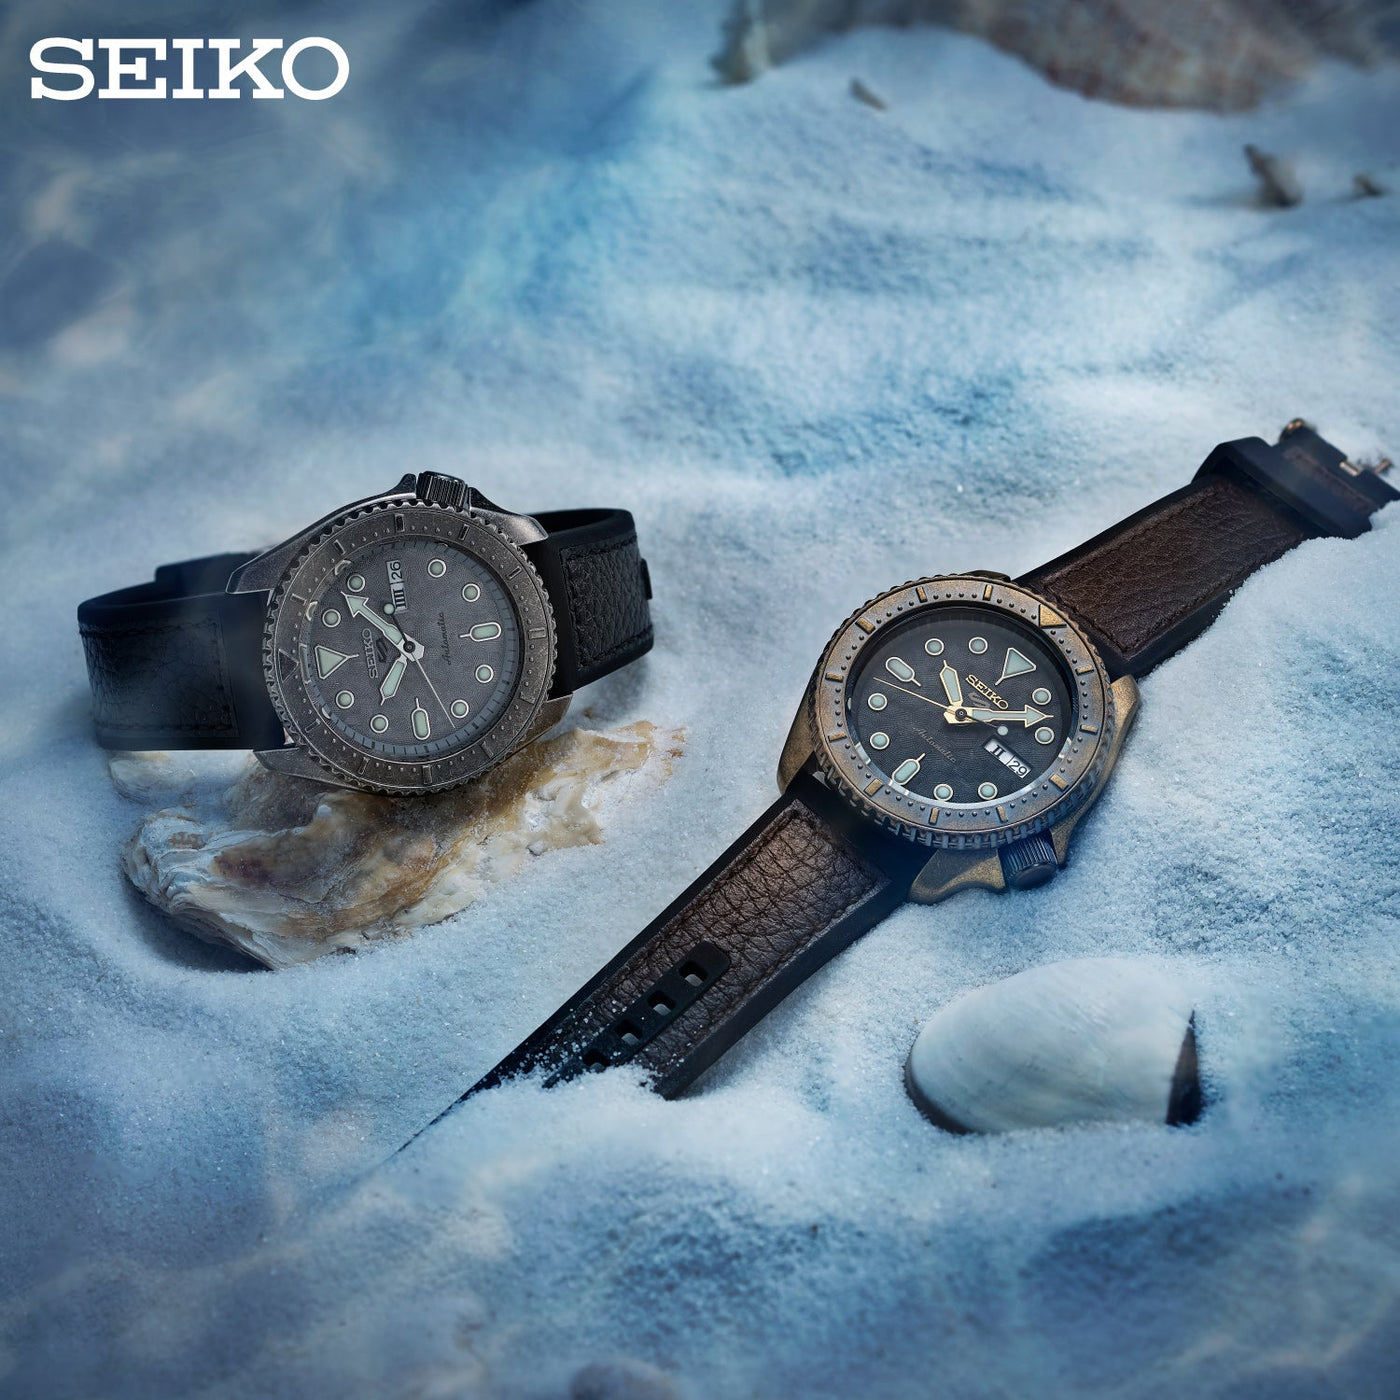 Seiko (ไซโก) นาฬิกาข้อมือ รุ่น New Seiko 5 Sports Automatic SRPE79K ระบบอัตโนมัติ ขนาดตัวเรือน 42.5 มม.